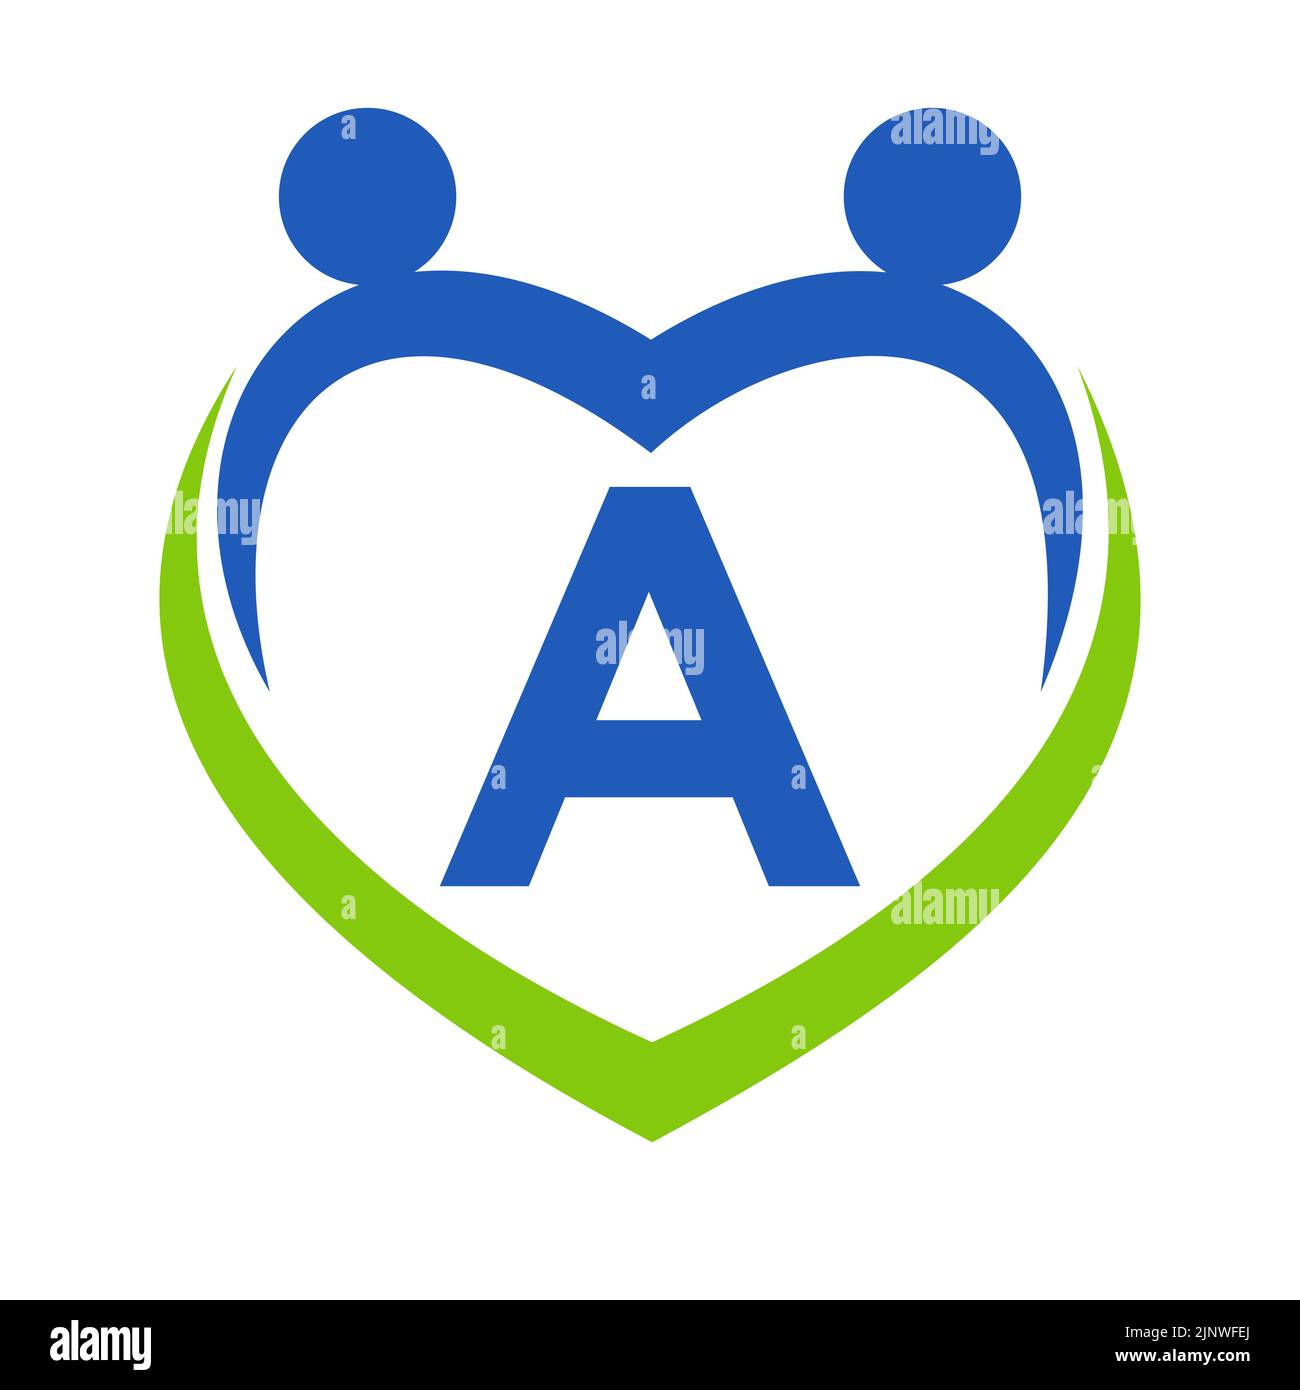 Health Care Sign-On Schreiben Sie Eine Vorlage. Unity und Teamwork Logo Design. Logo der Stiftung für wohltätige Zwecke und Spenden Stock Vektor